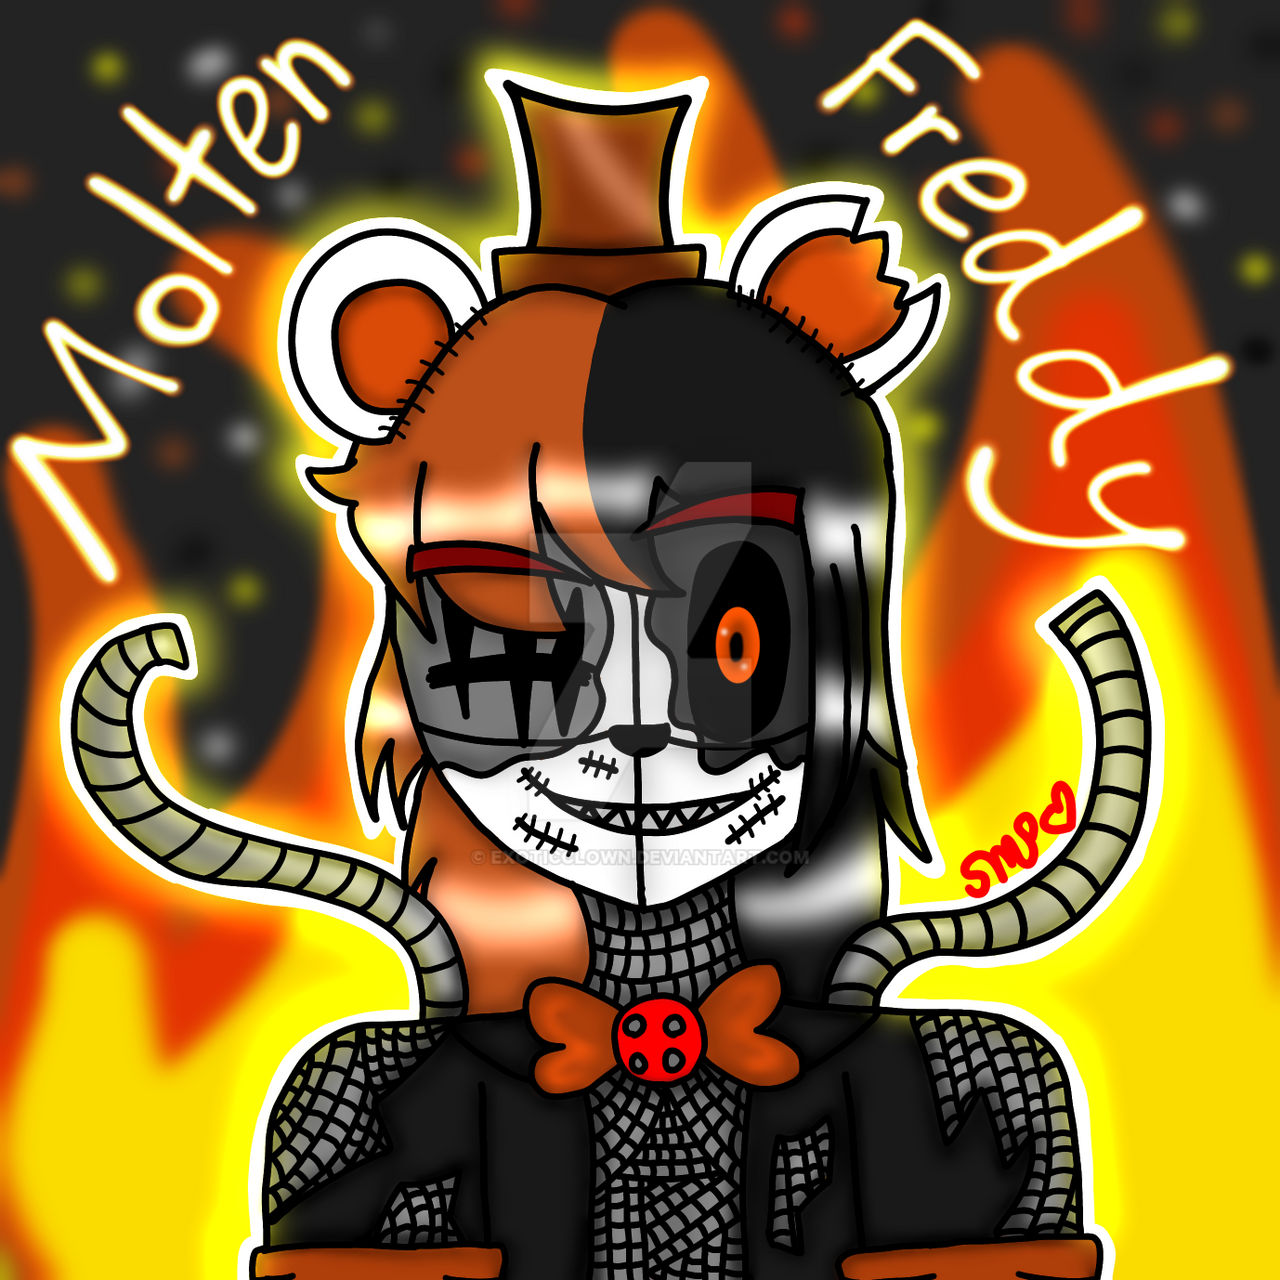 Molten Freddy by BlackstarchanX3 on DeviantArt